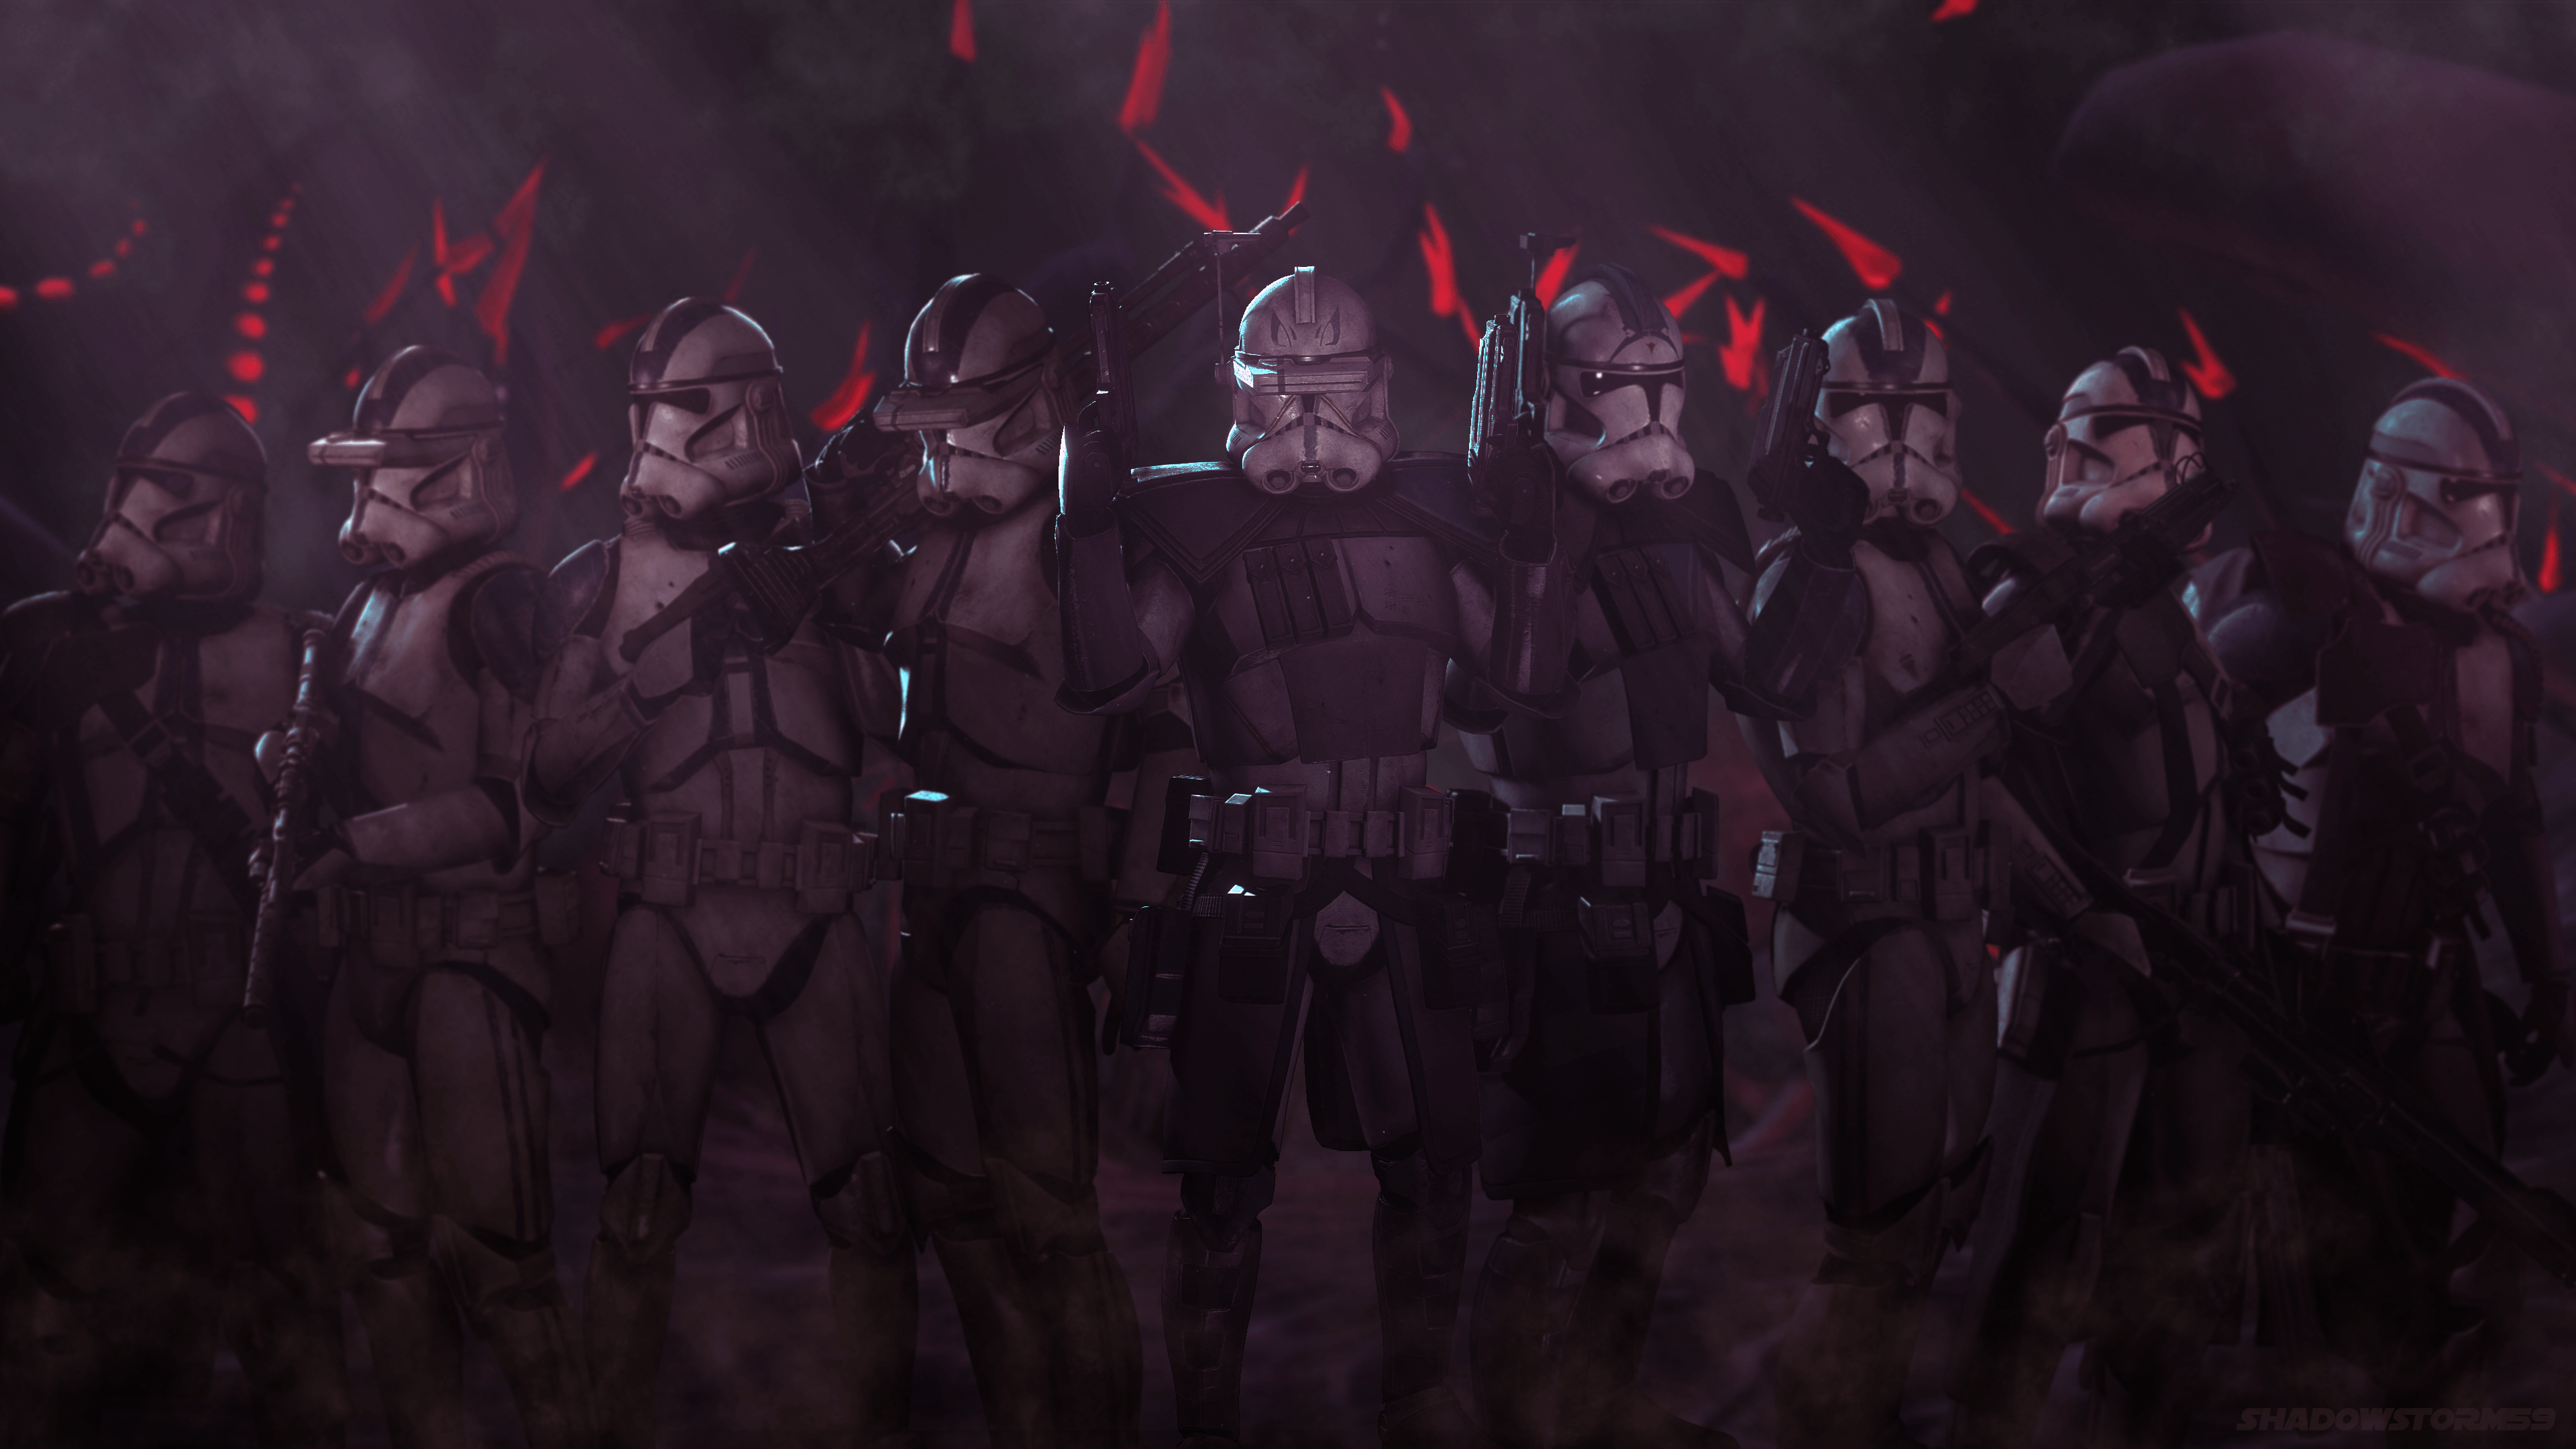 501st Legion Clone Trooper Wallpaper